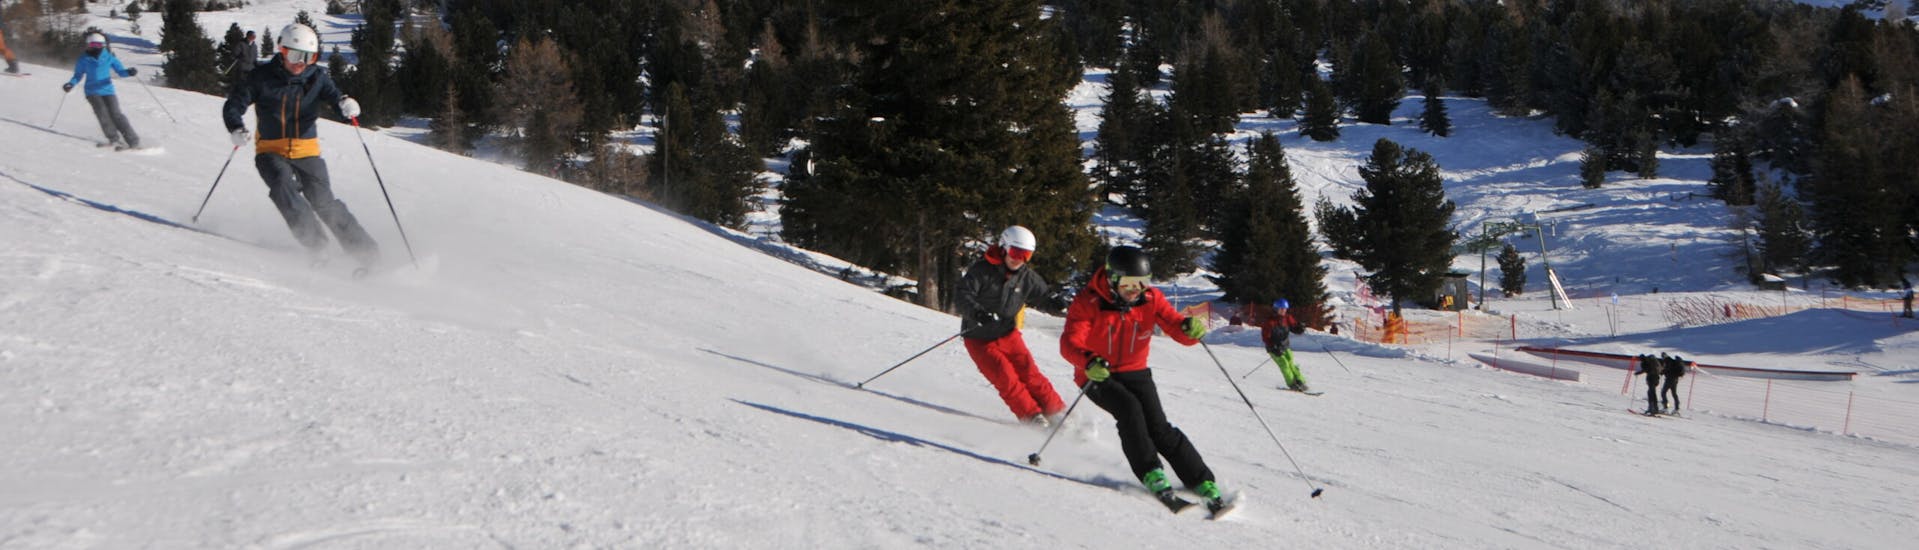 Cours particulier de ski Adultes avec Expérience avec Ski- & Snowboardschule Innsbruck.